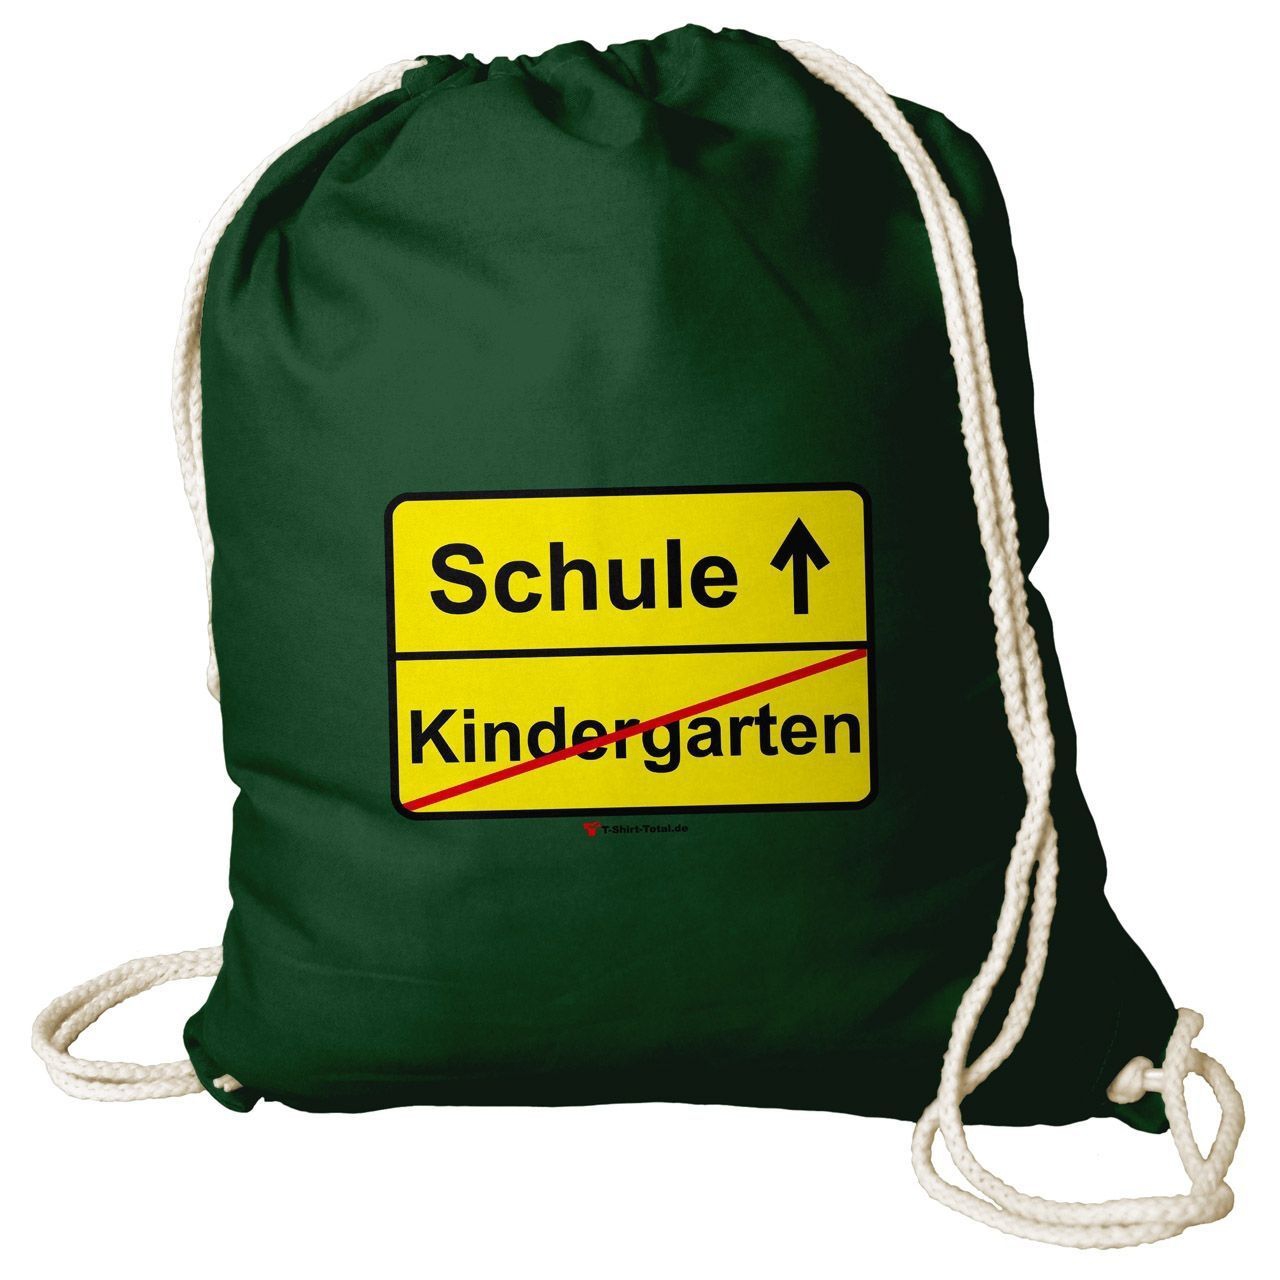 Kindergarten Schule Rucksack Beutel dunkelgrün